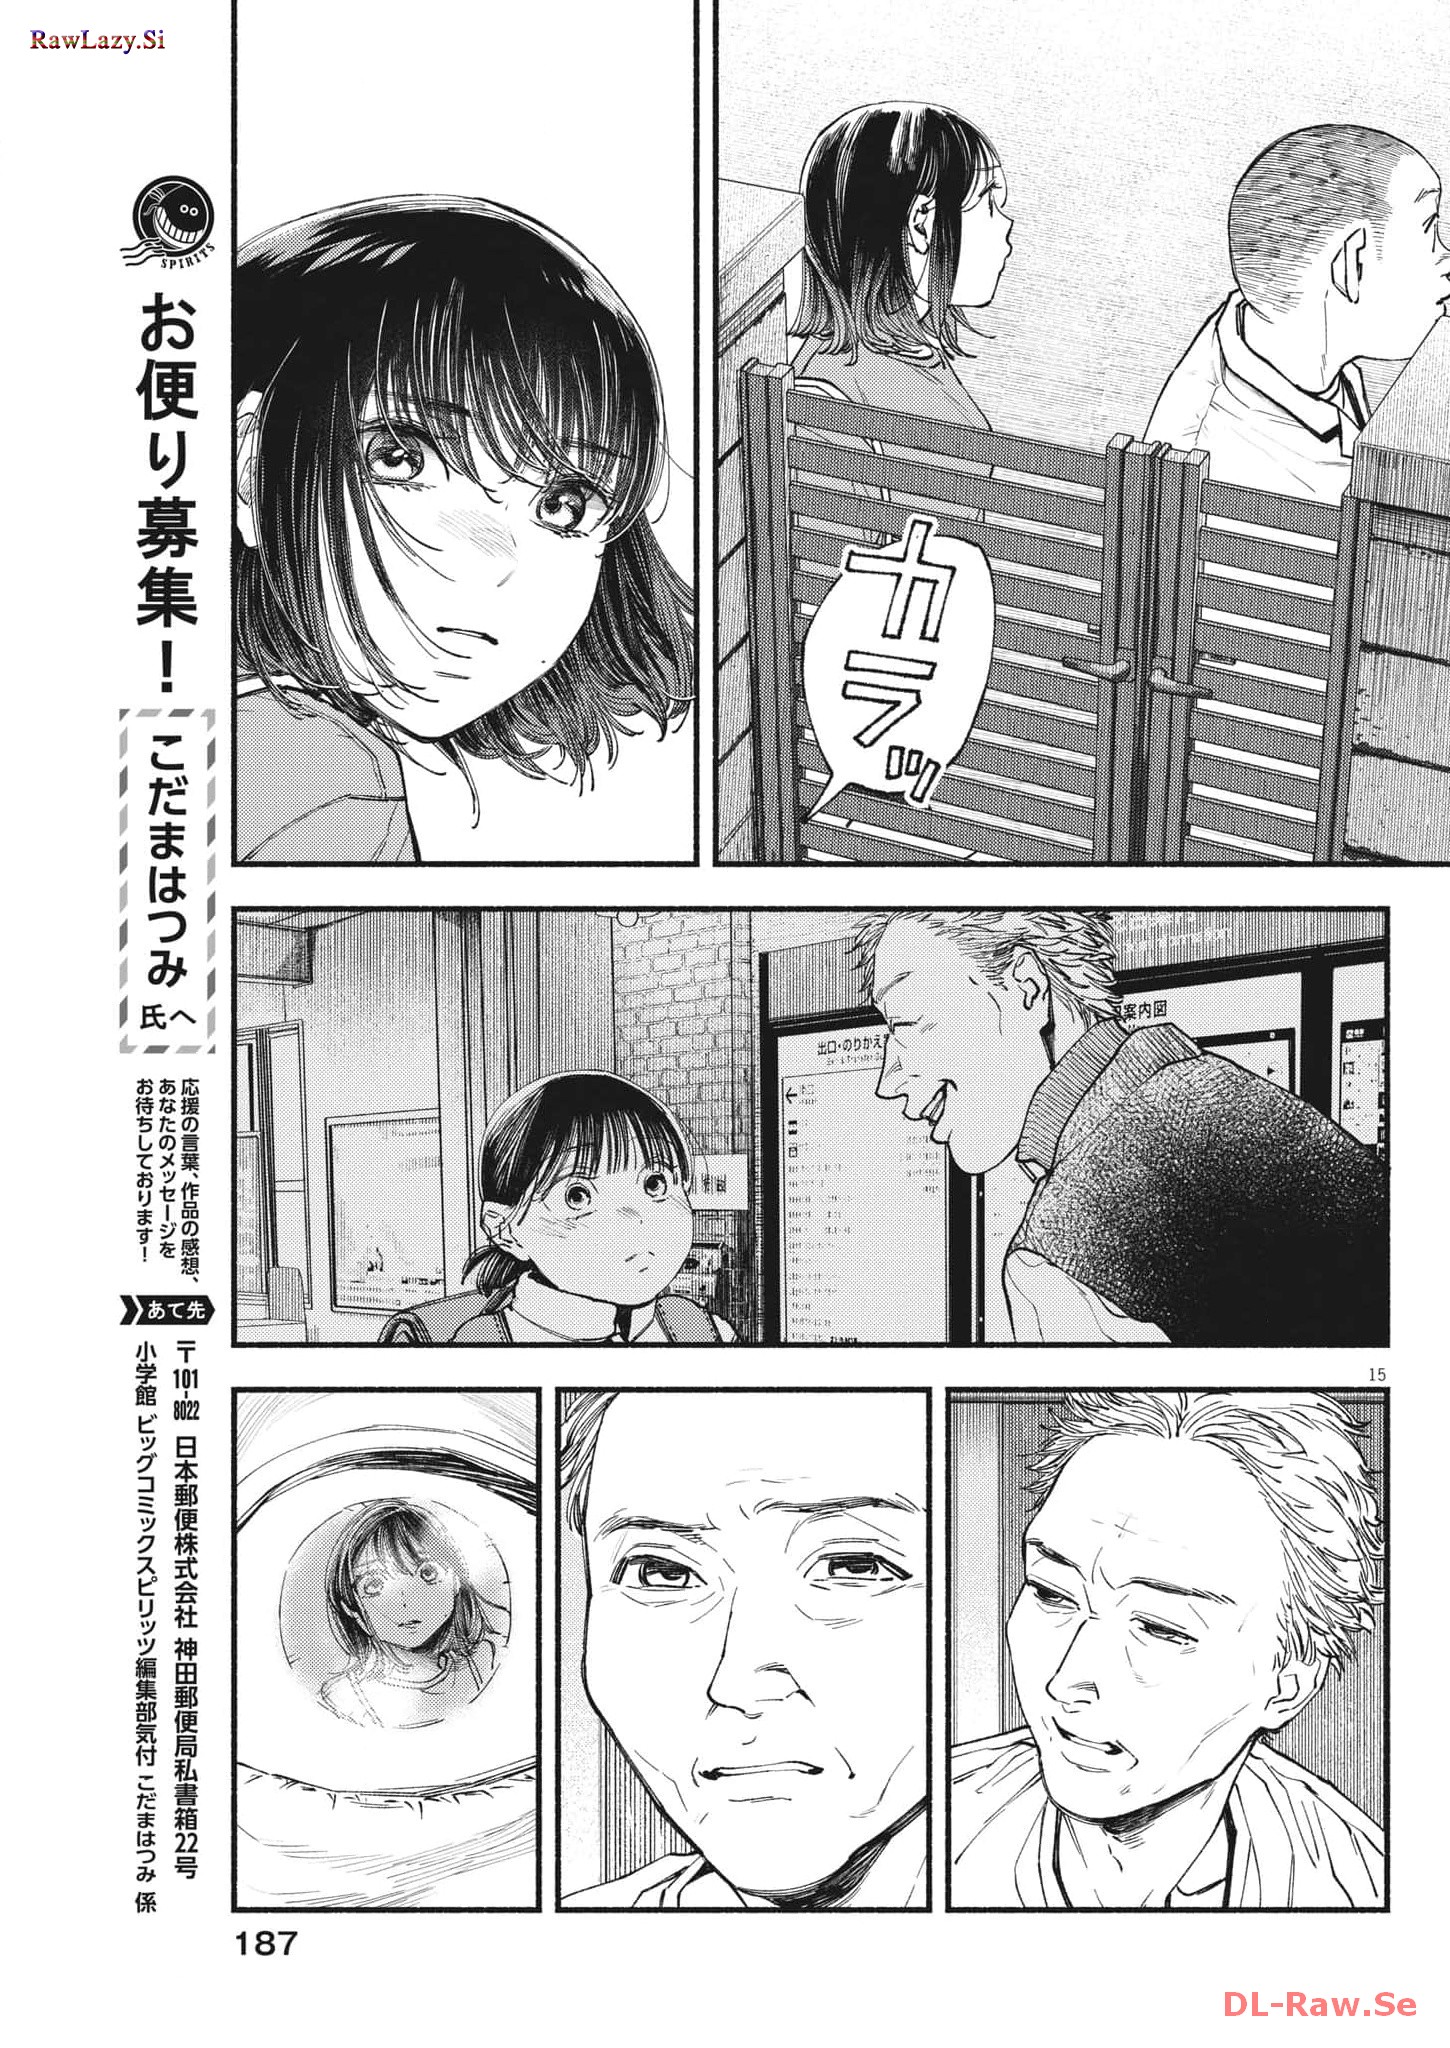 Konoyo wa Tatakau Kachi ga Aru  - Chapter 16 - Page 15